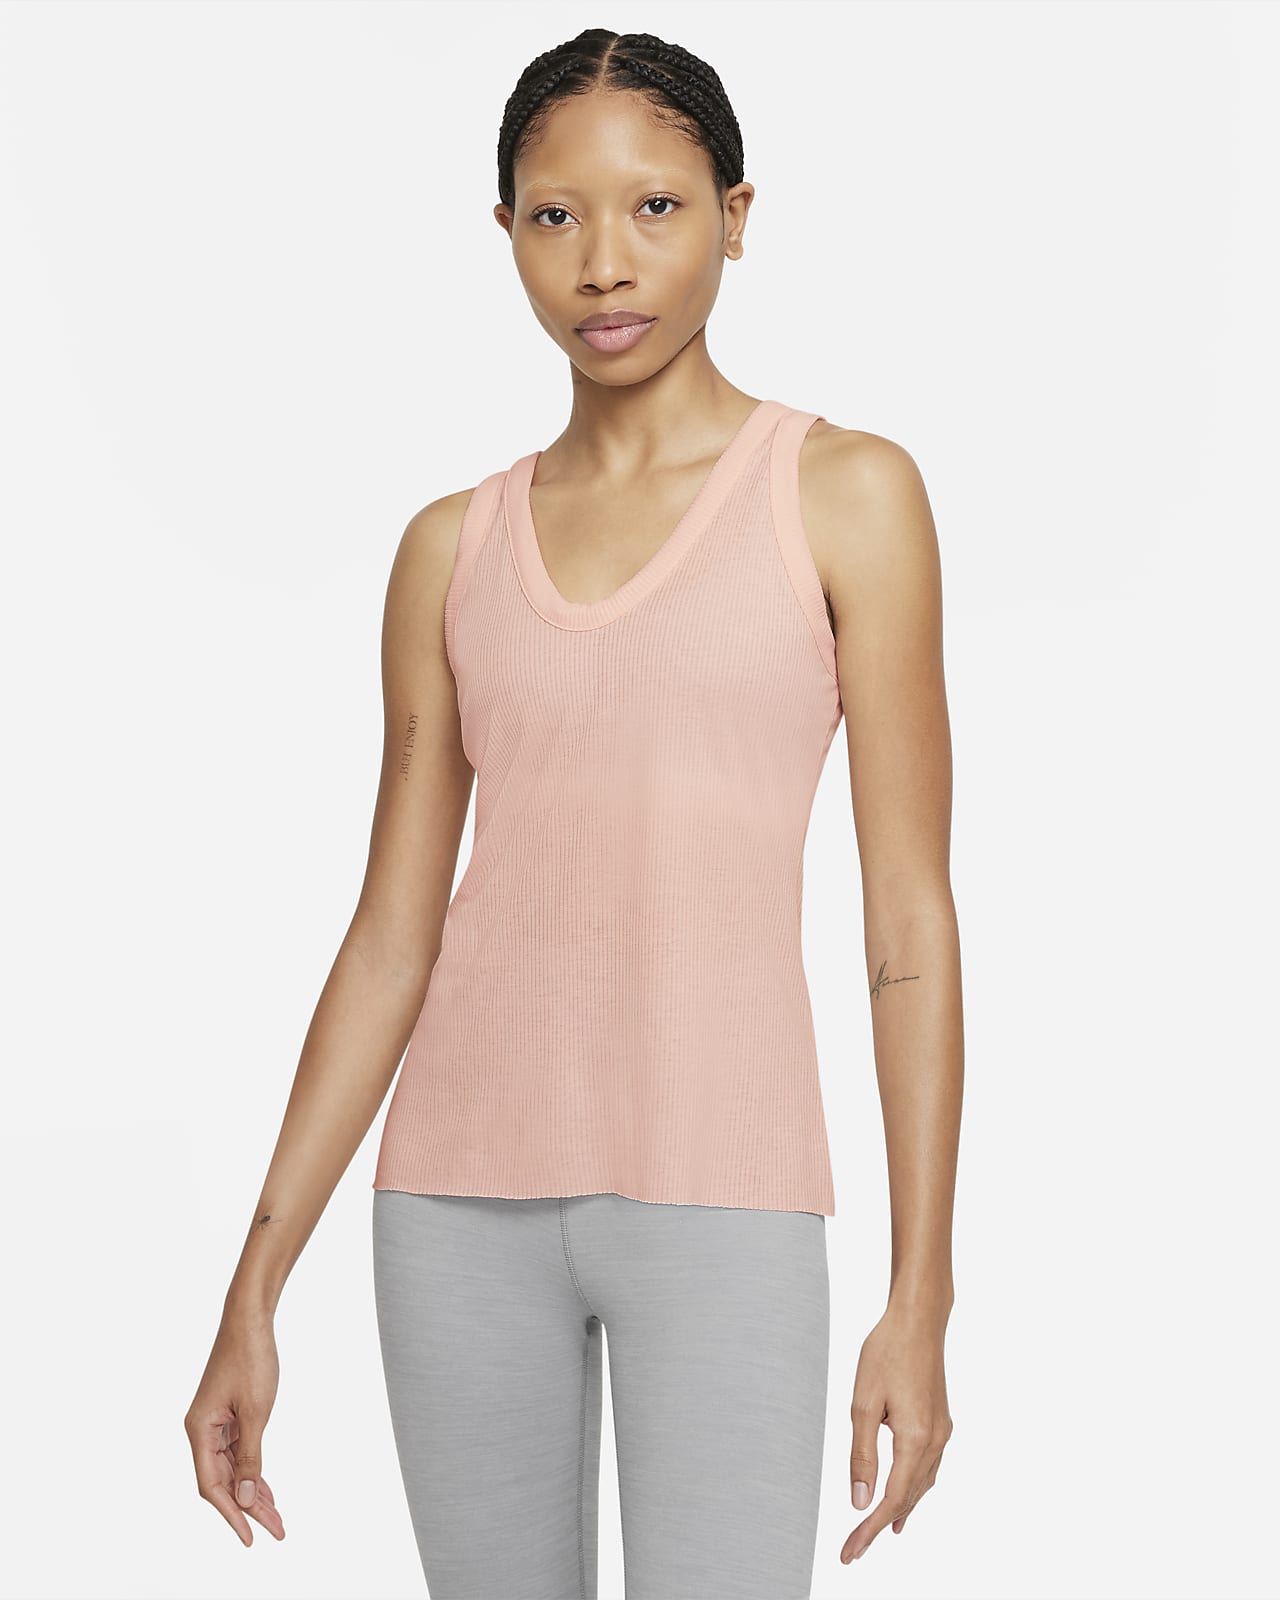 Nike Yoga Luxe Women's Cropped Jacquard Tank DJ2025-010 Plus Size 2X Gray